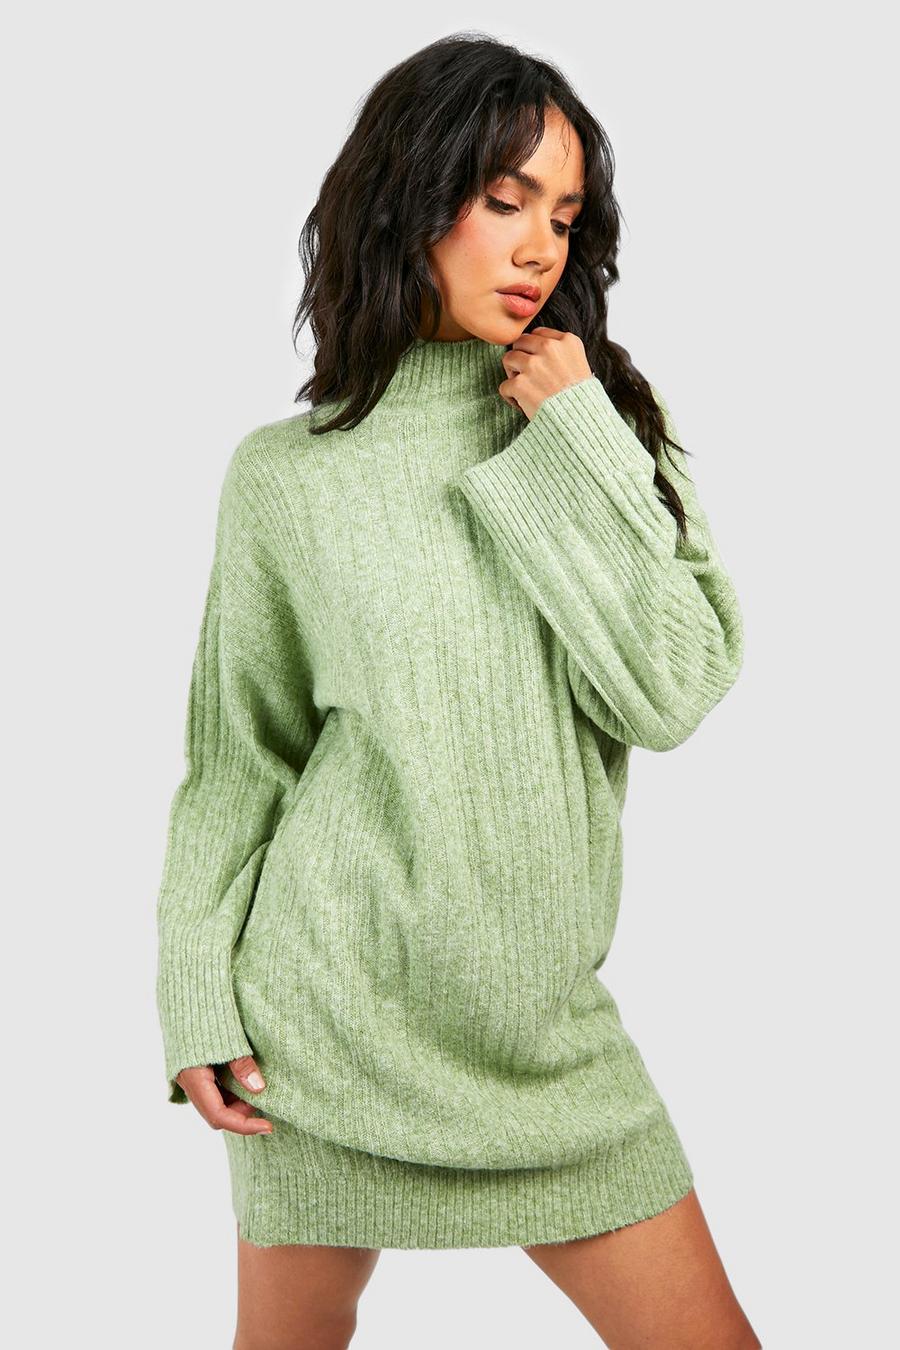 Apple green Soft Mixed Rib Knit Jumper Dress